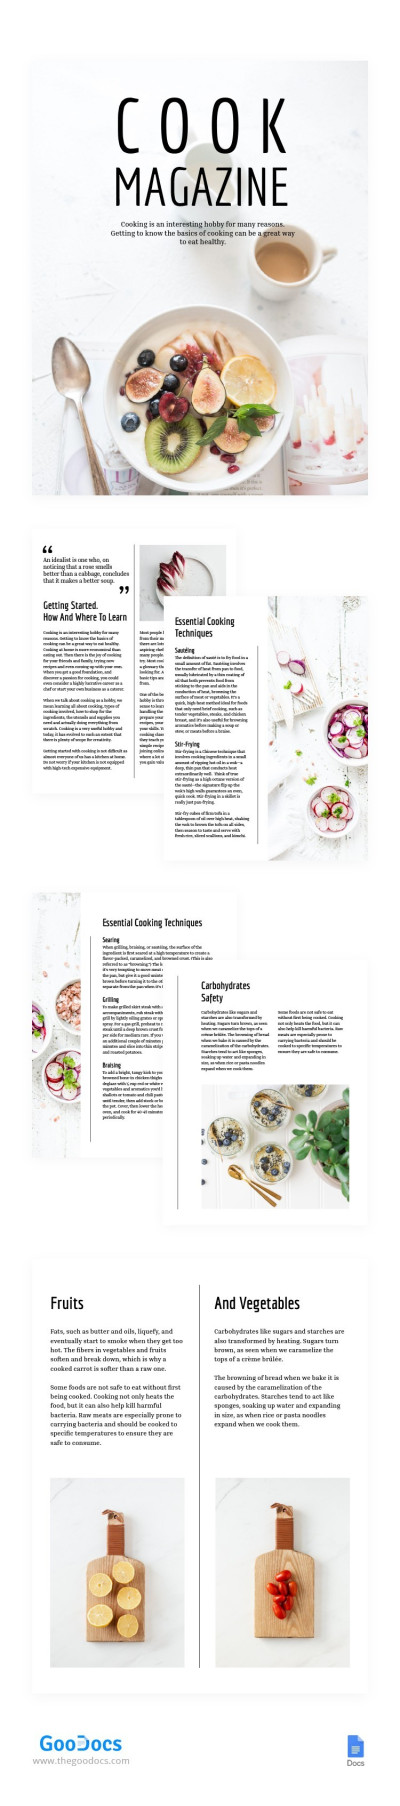 Minimalistic White Cook Magazine Template